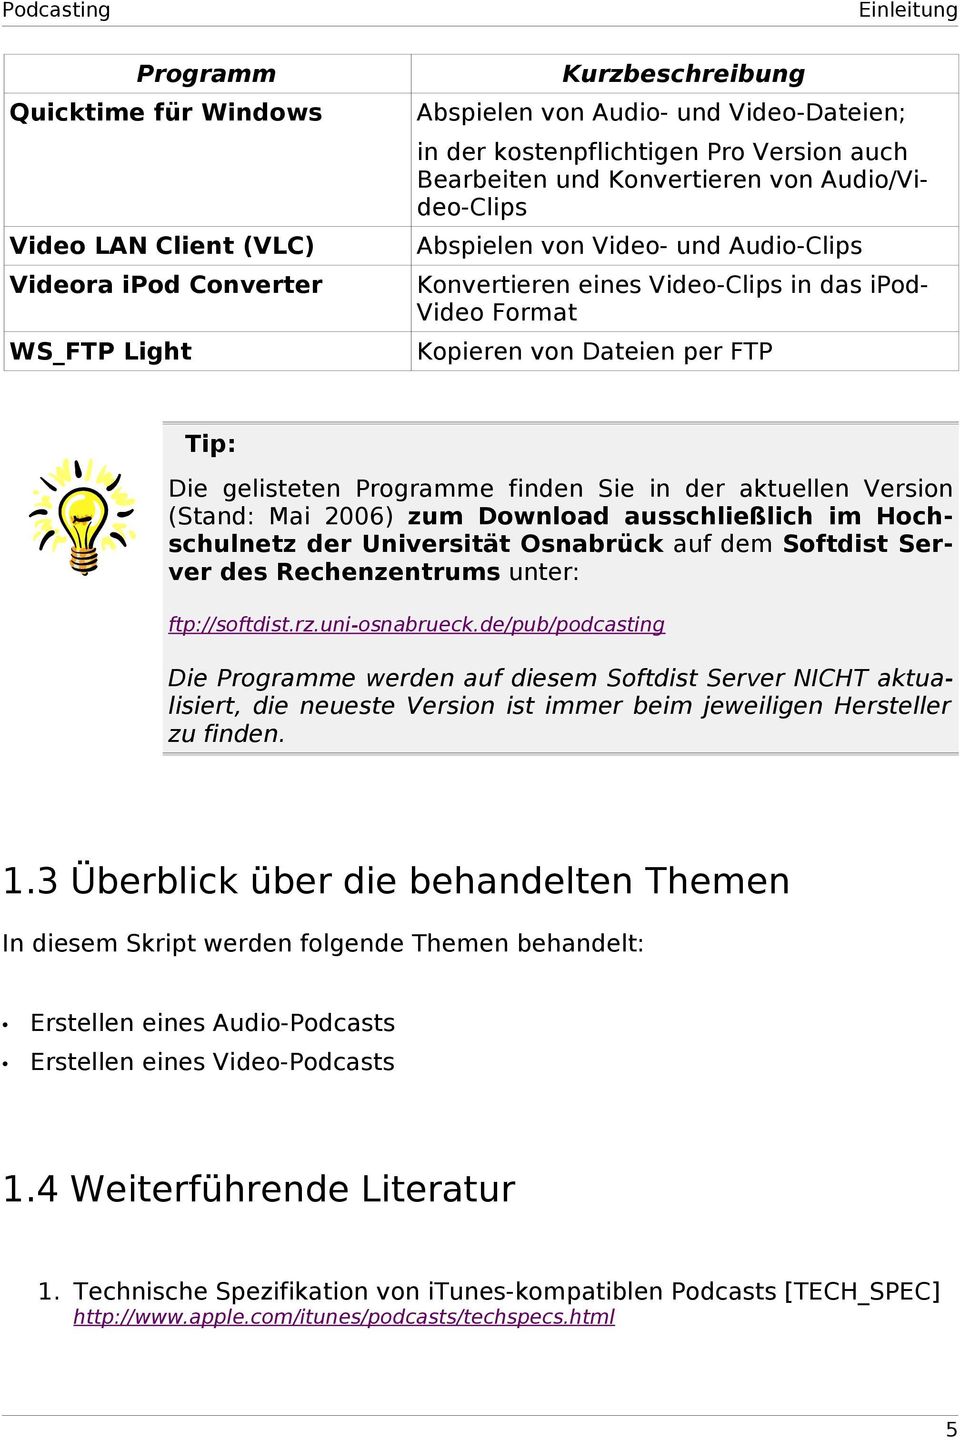 Programme finden Sie in der aktuellen Version (Stand: Mai 2006) zum Download ausschließlich im Hochschulnetz der Universität Osnabrück auf dem Softdist Server des Rechenzentrums unter: ftp://softdist.